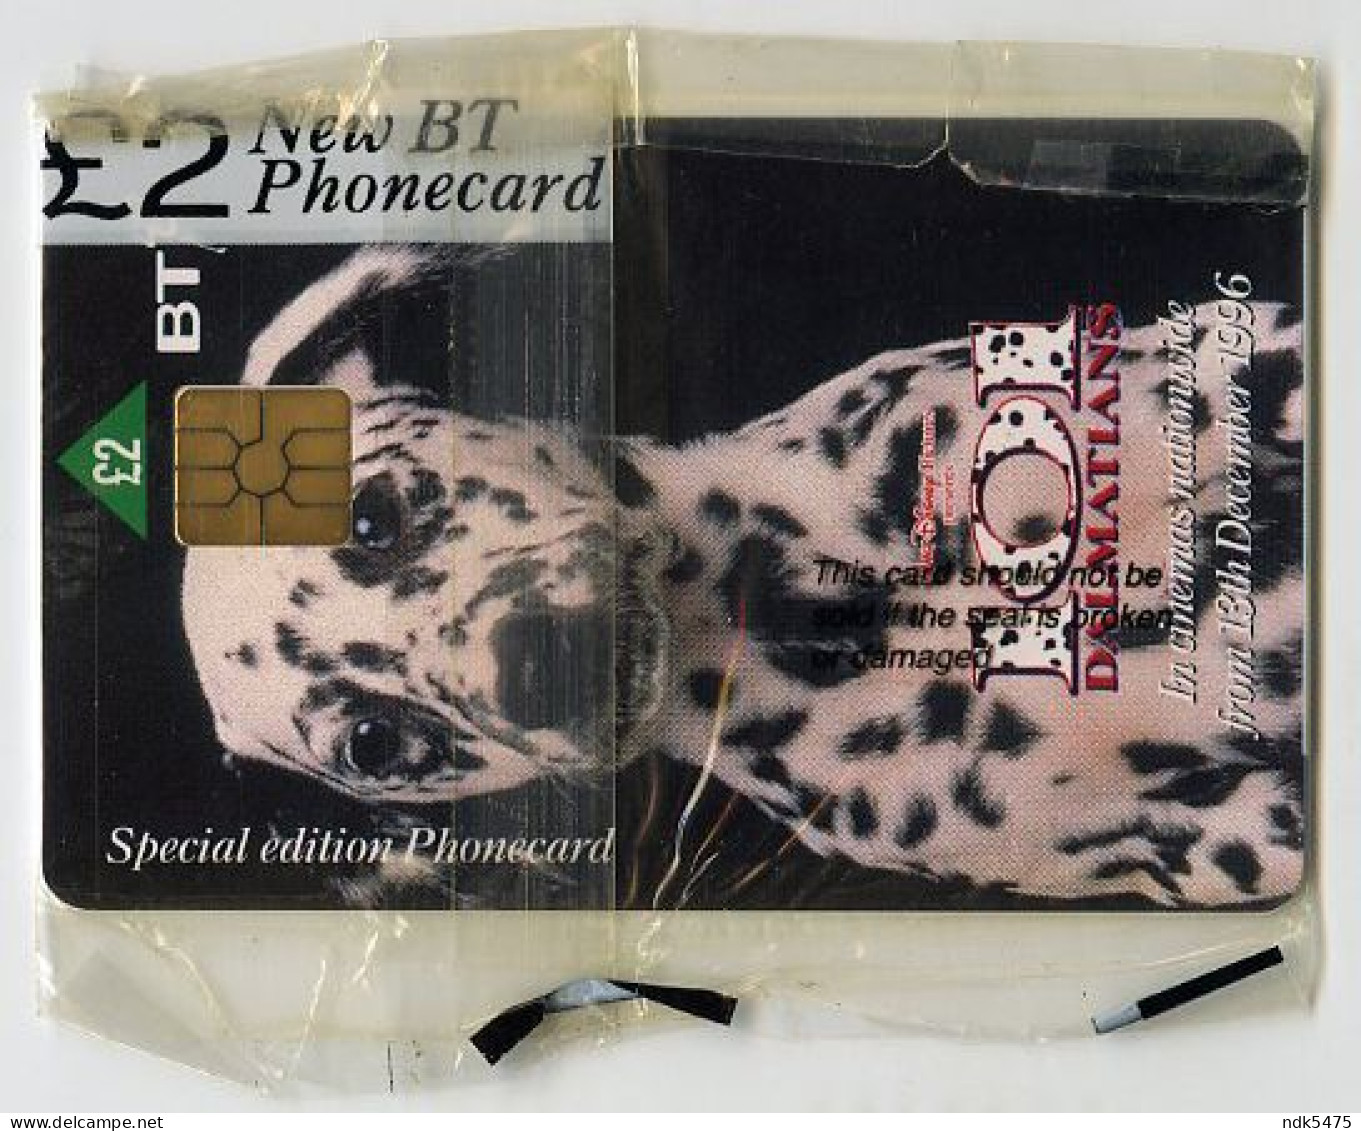 BT PHONECARD : 101 DALMATIONS - 1996 FILM : £2 - BT Promotionnelles